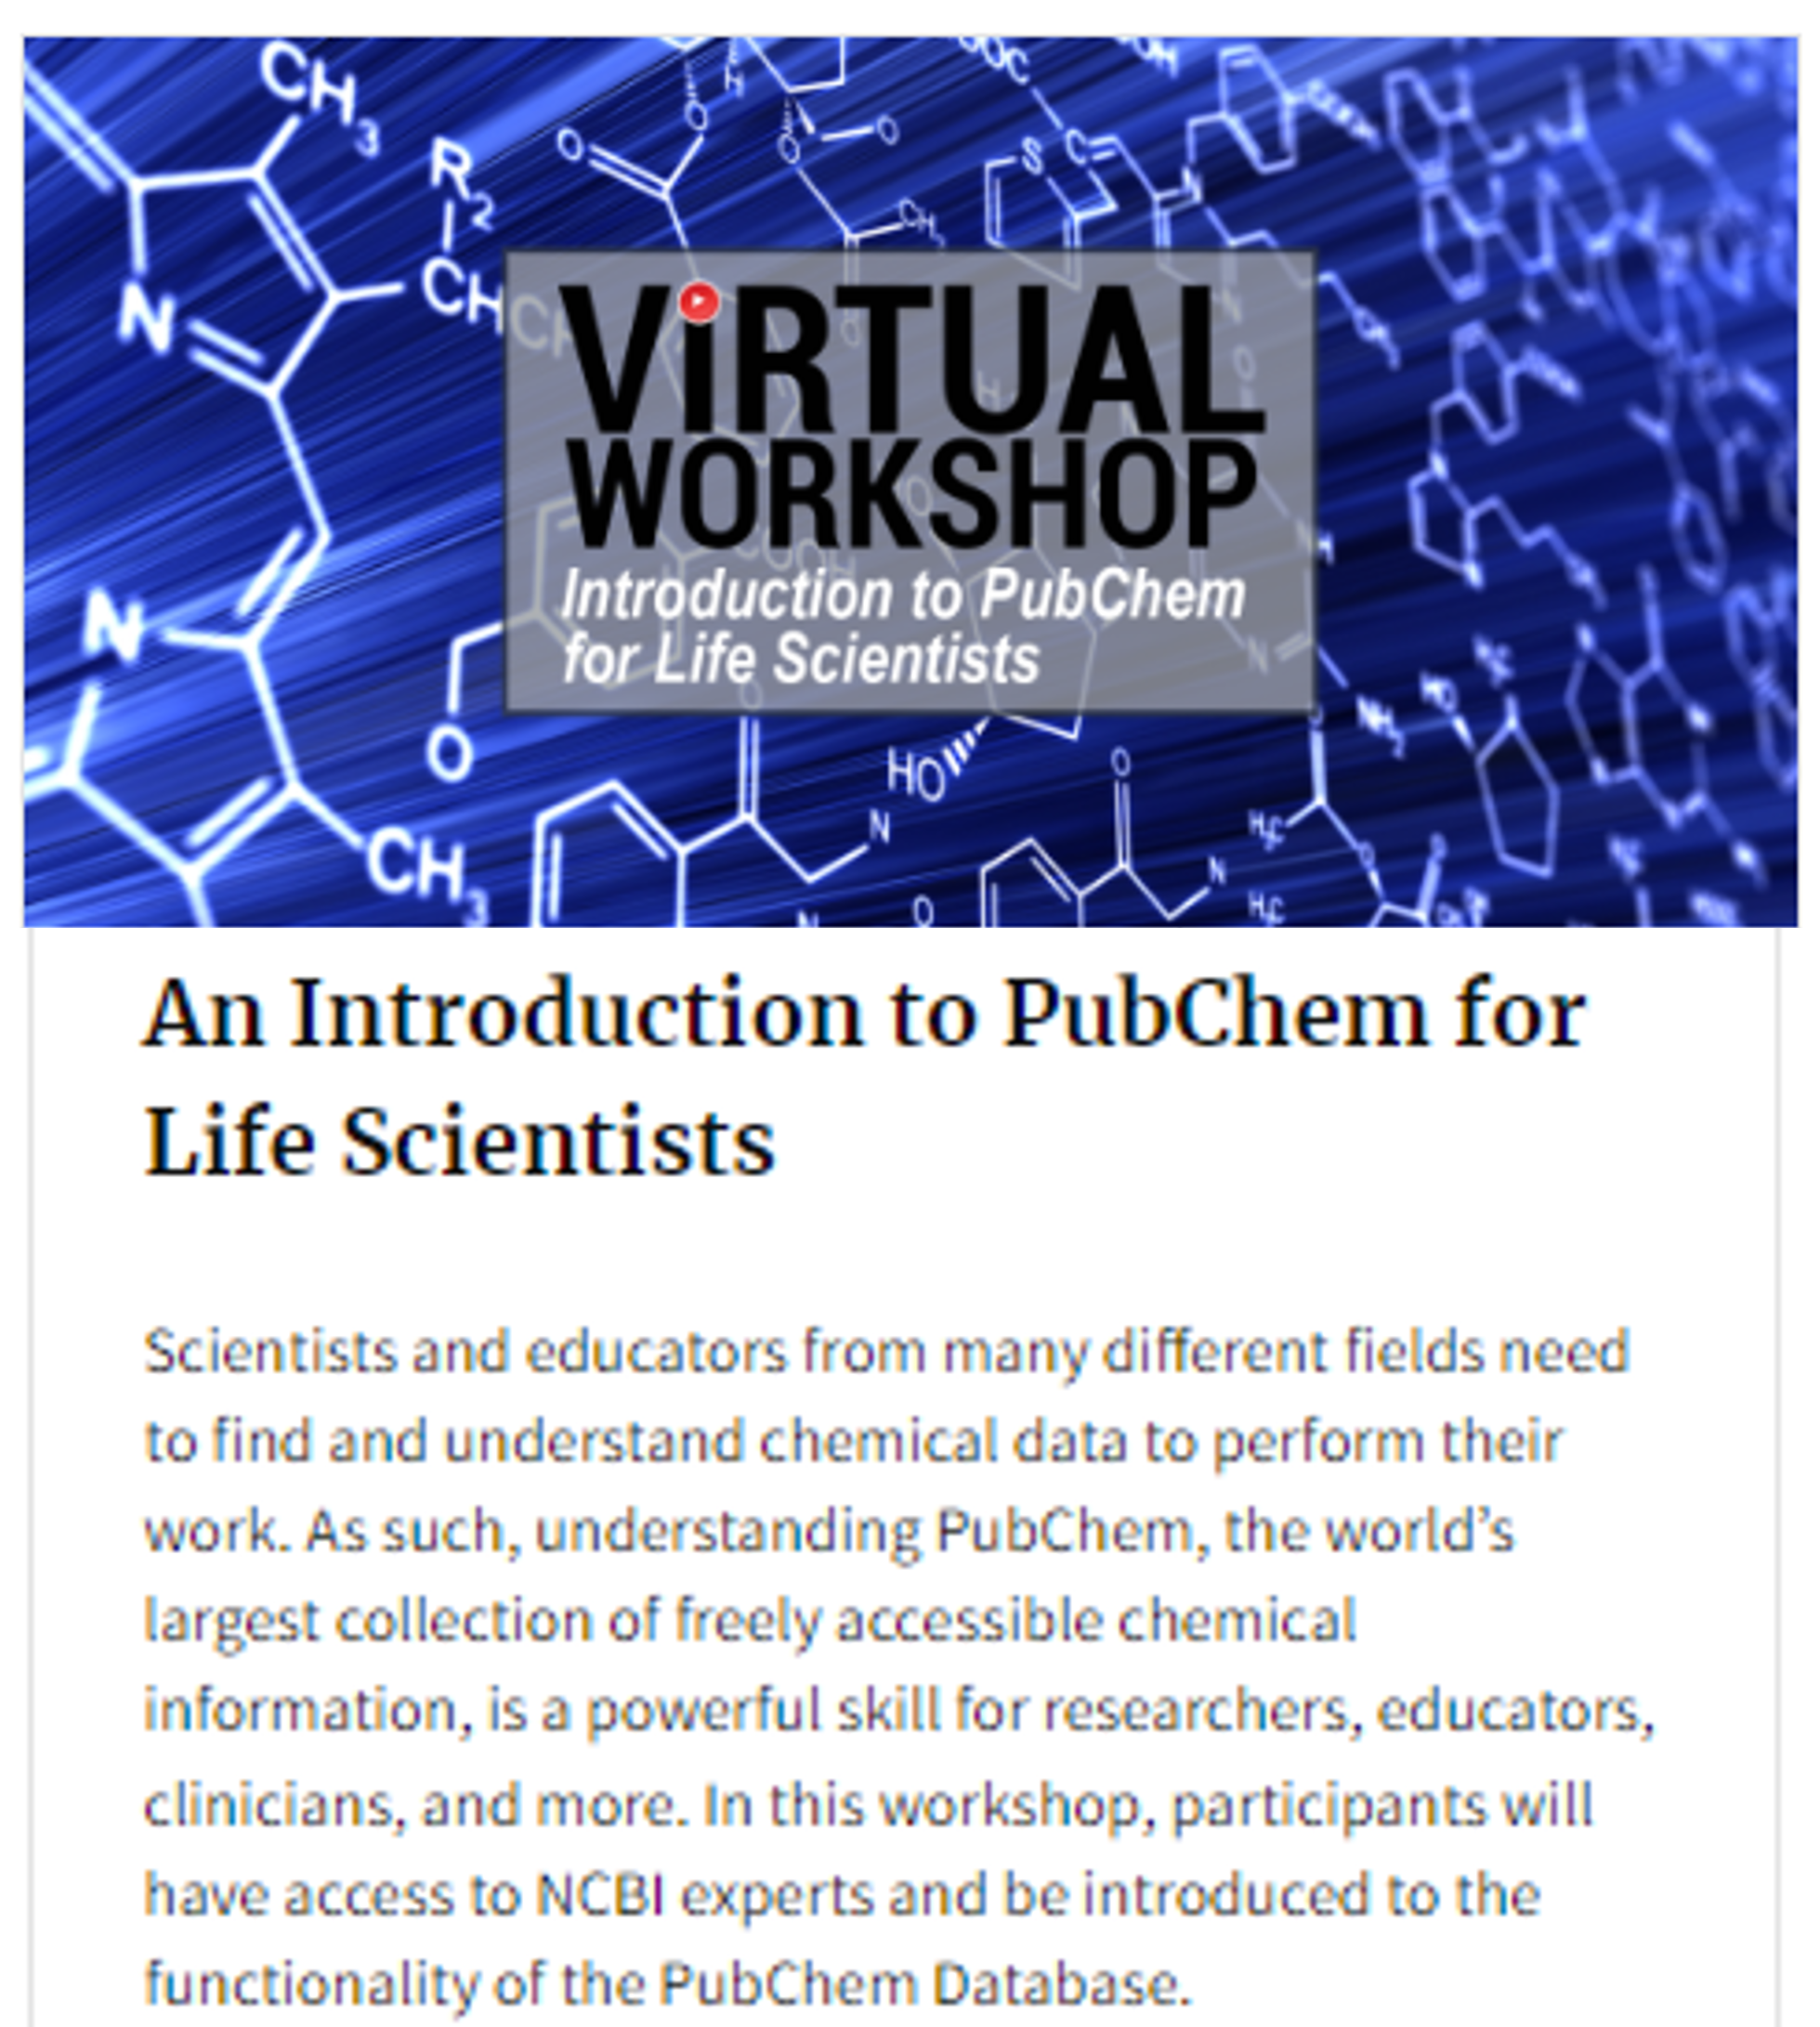 Description of PubChem Workshop